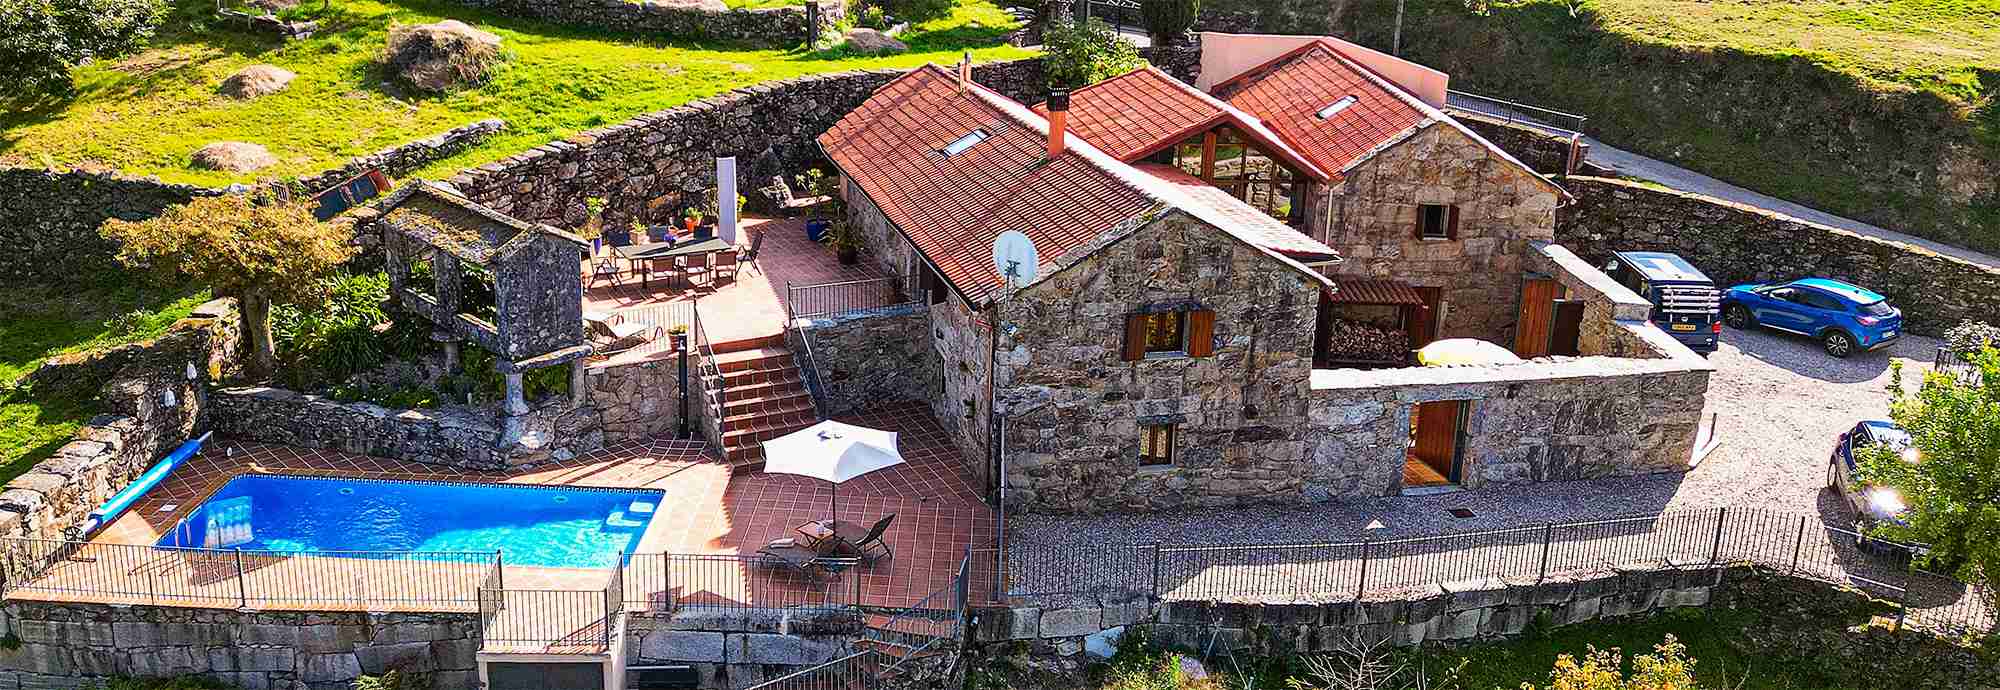 Casa tradicional y de calidad en una comarca muy auténtica de Galicia